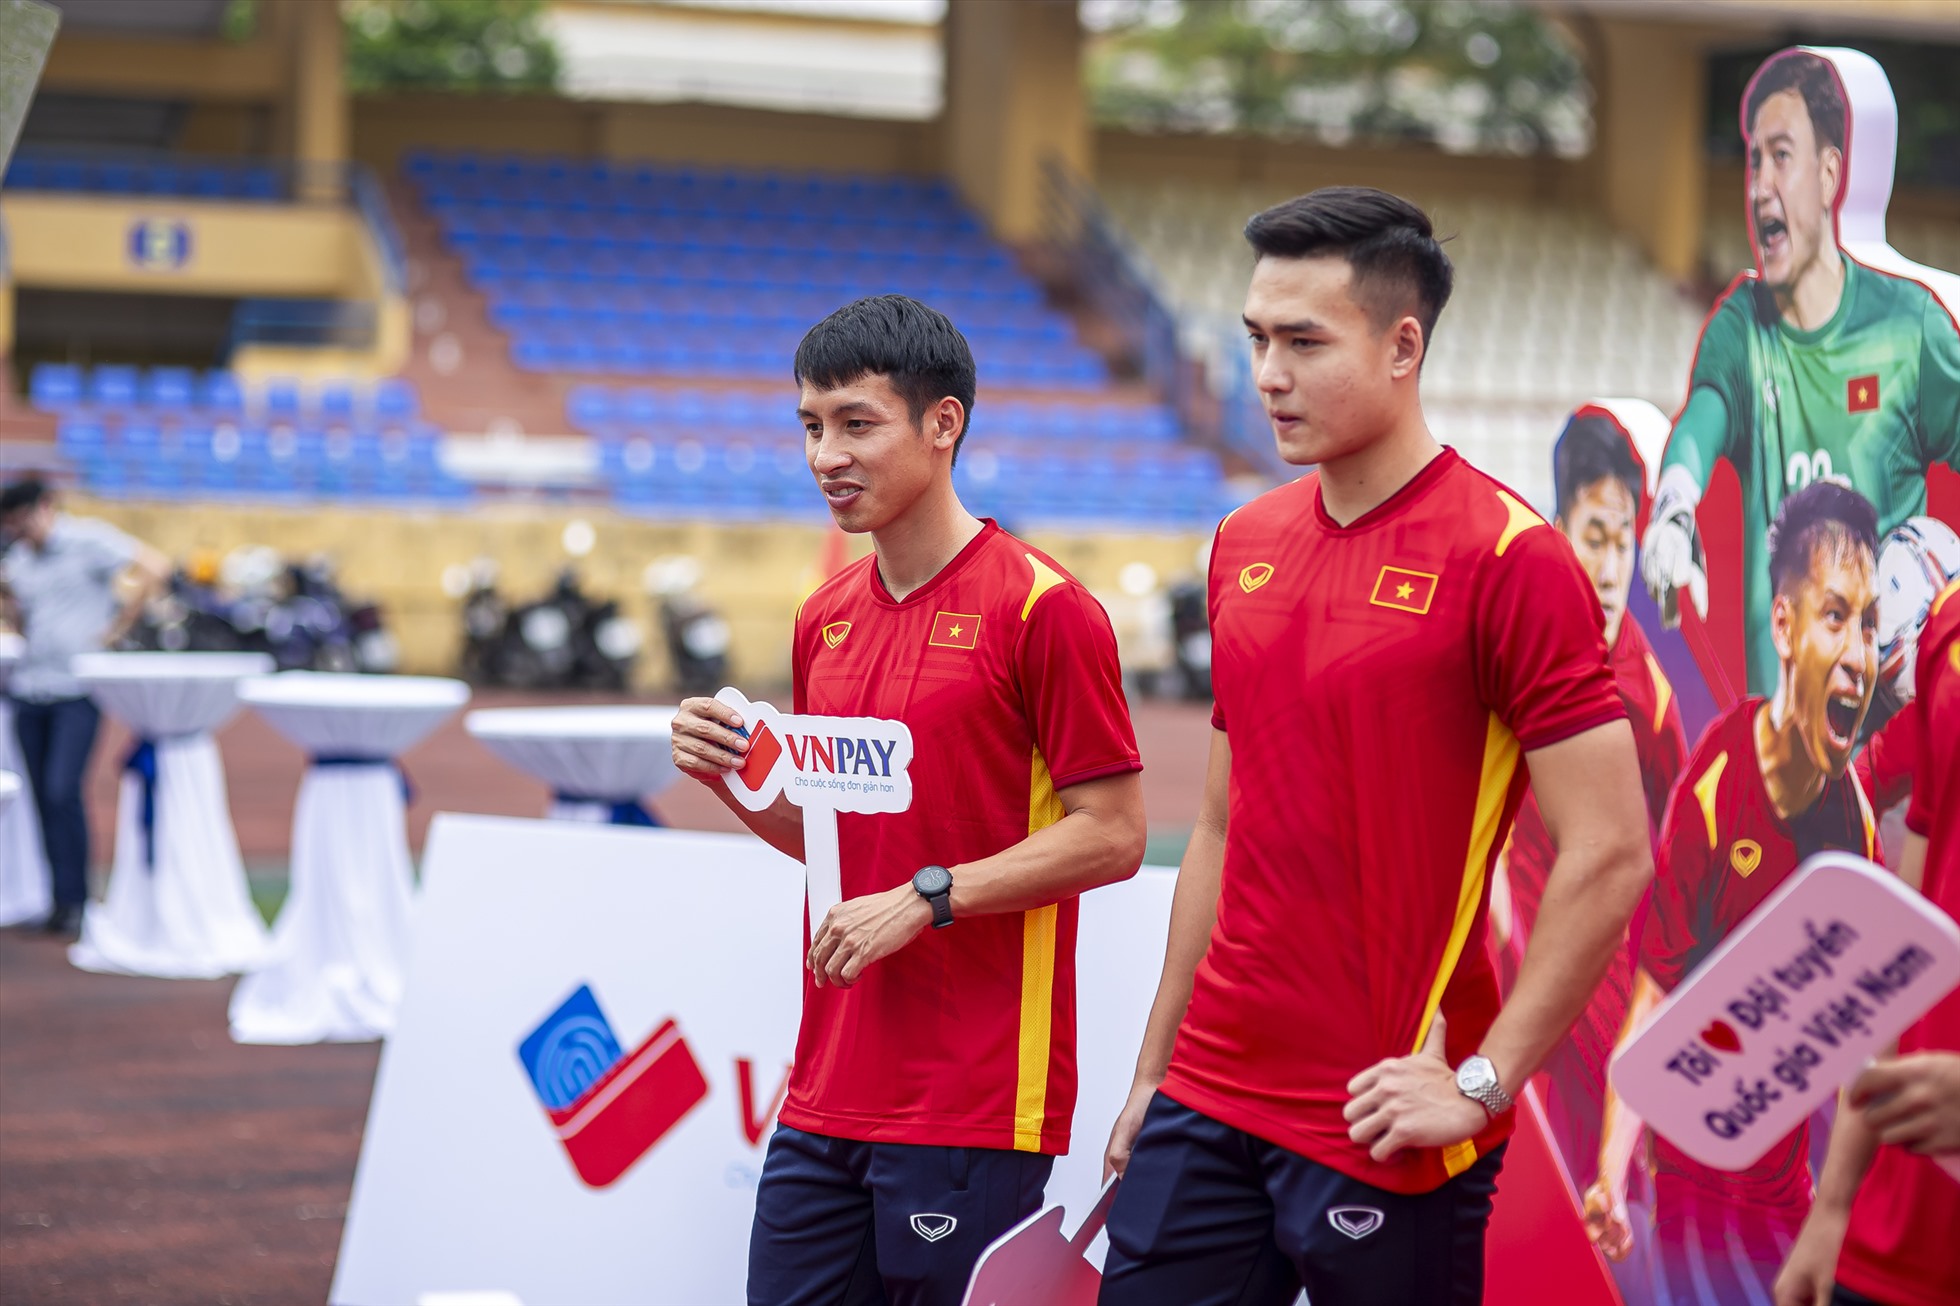 Các cầu thủ tuyển Việt Nam hào hứng